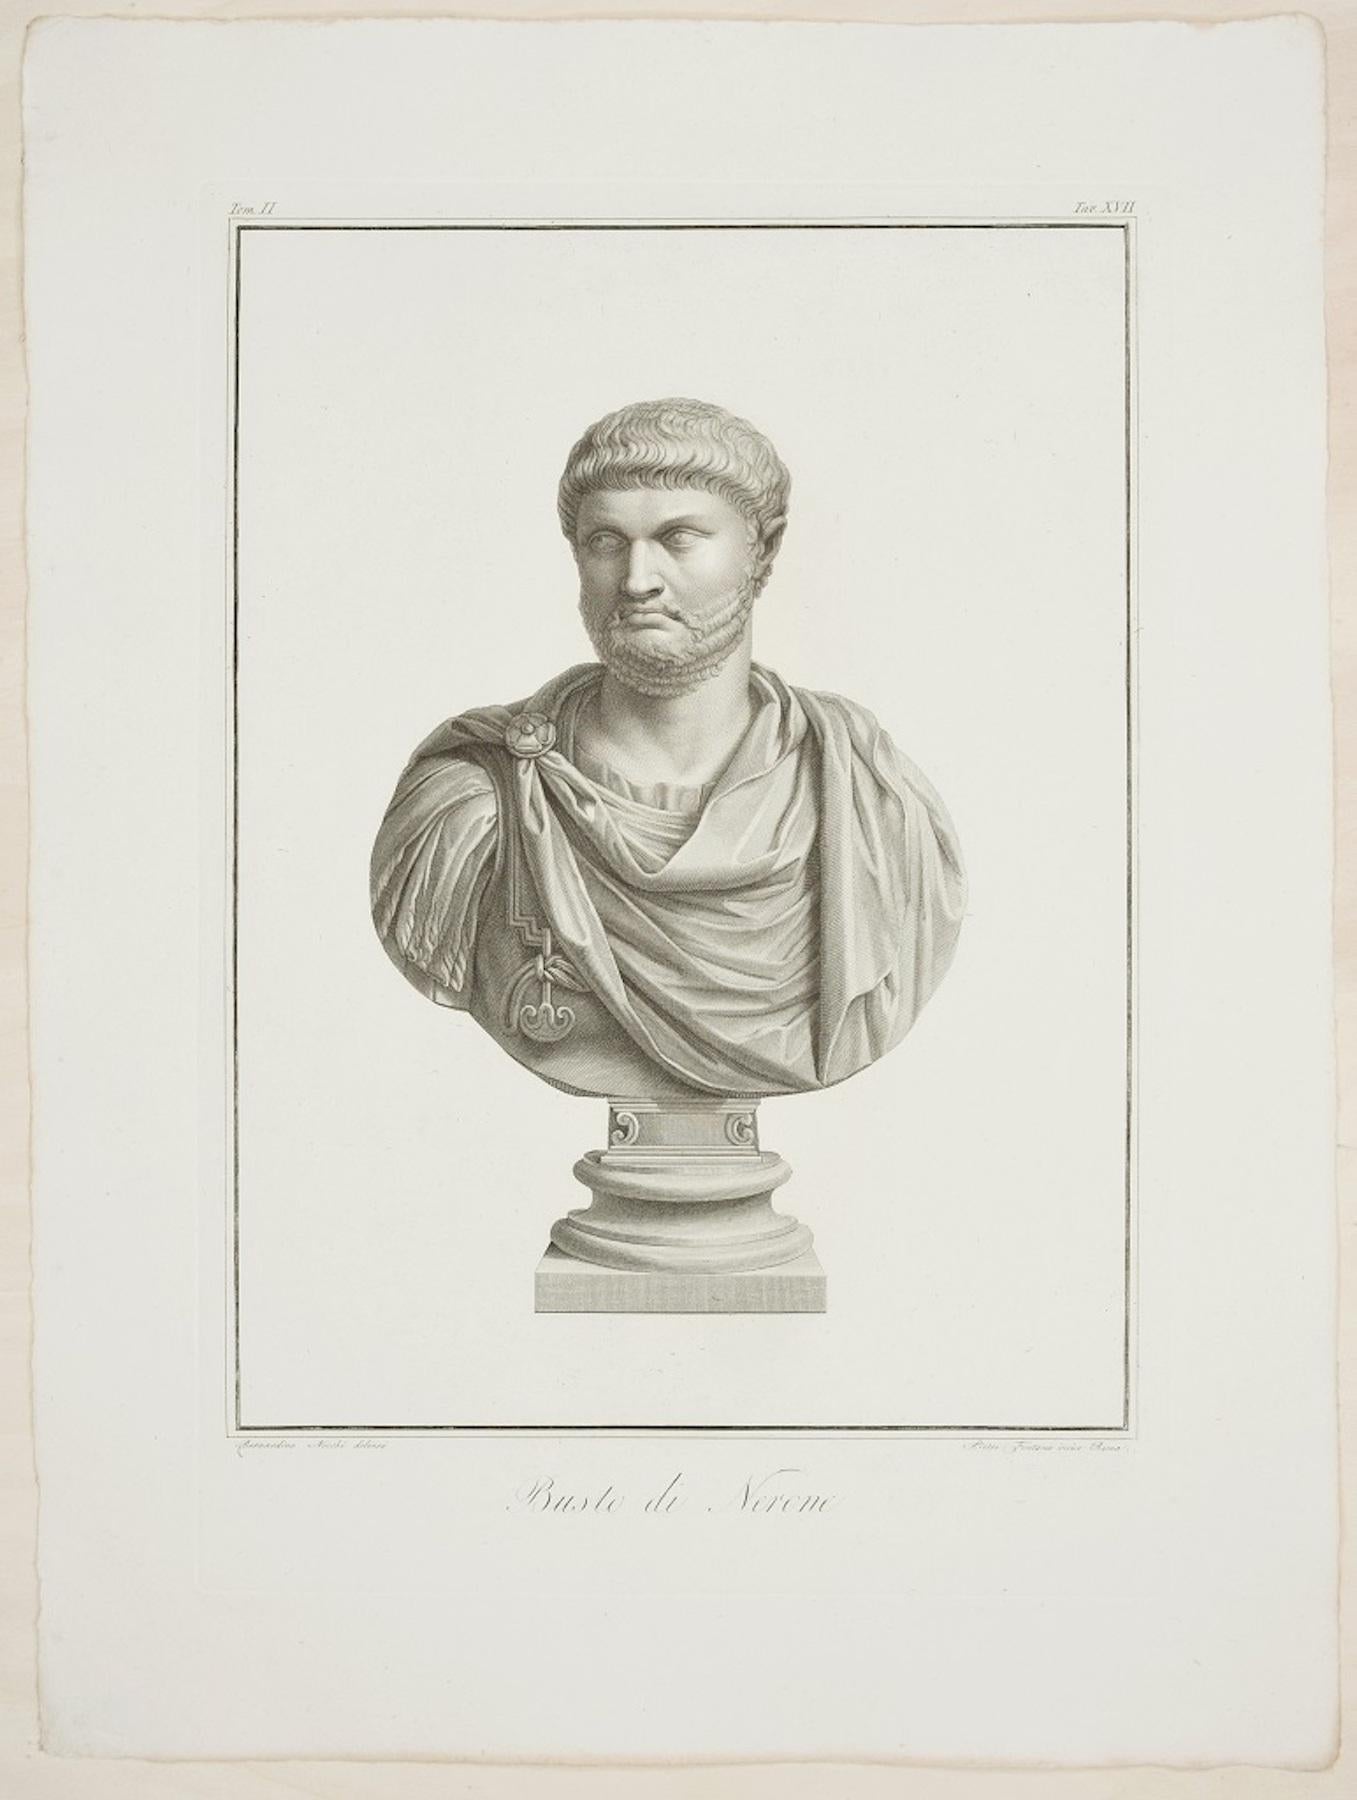 Portrait Print Pietro Fontana - Buste de Nero - Gravure originale de P. Fontana d'après B. Nocchi - 1821